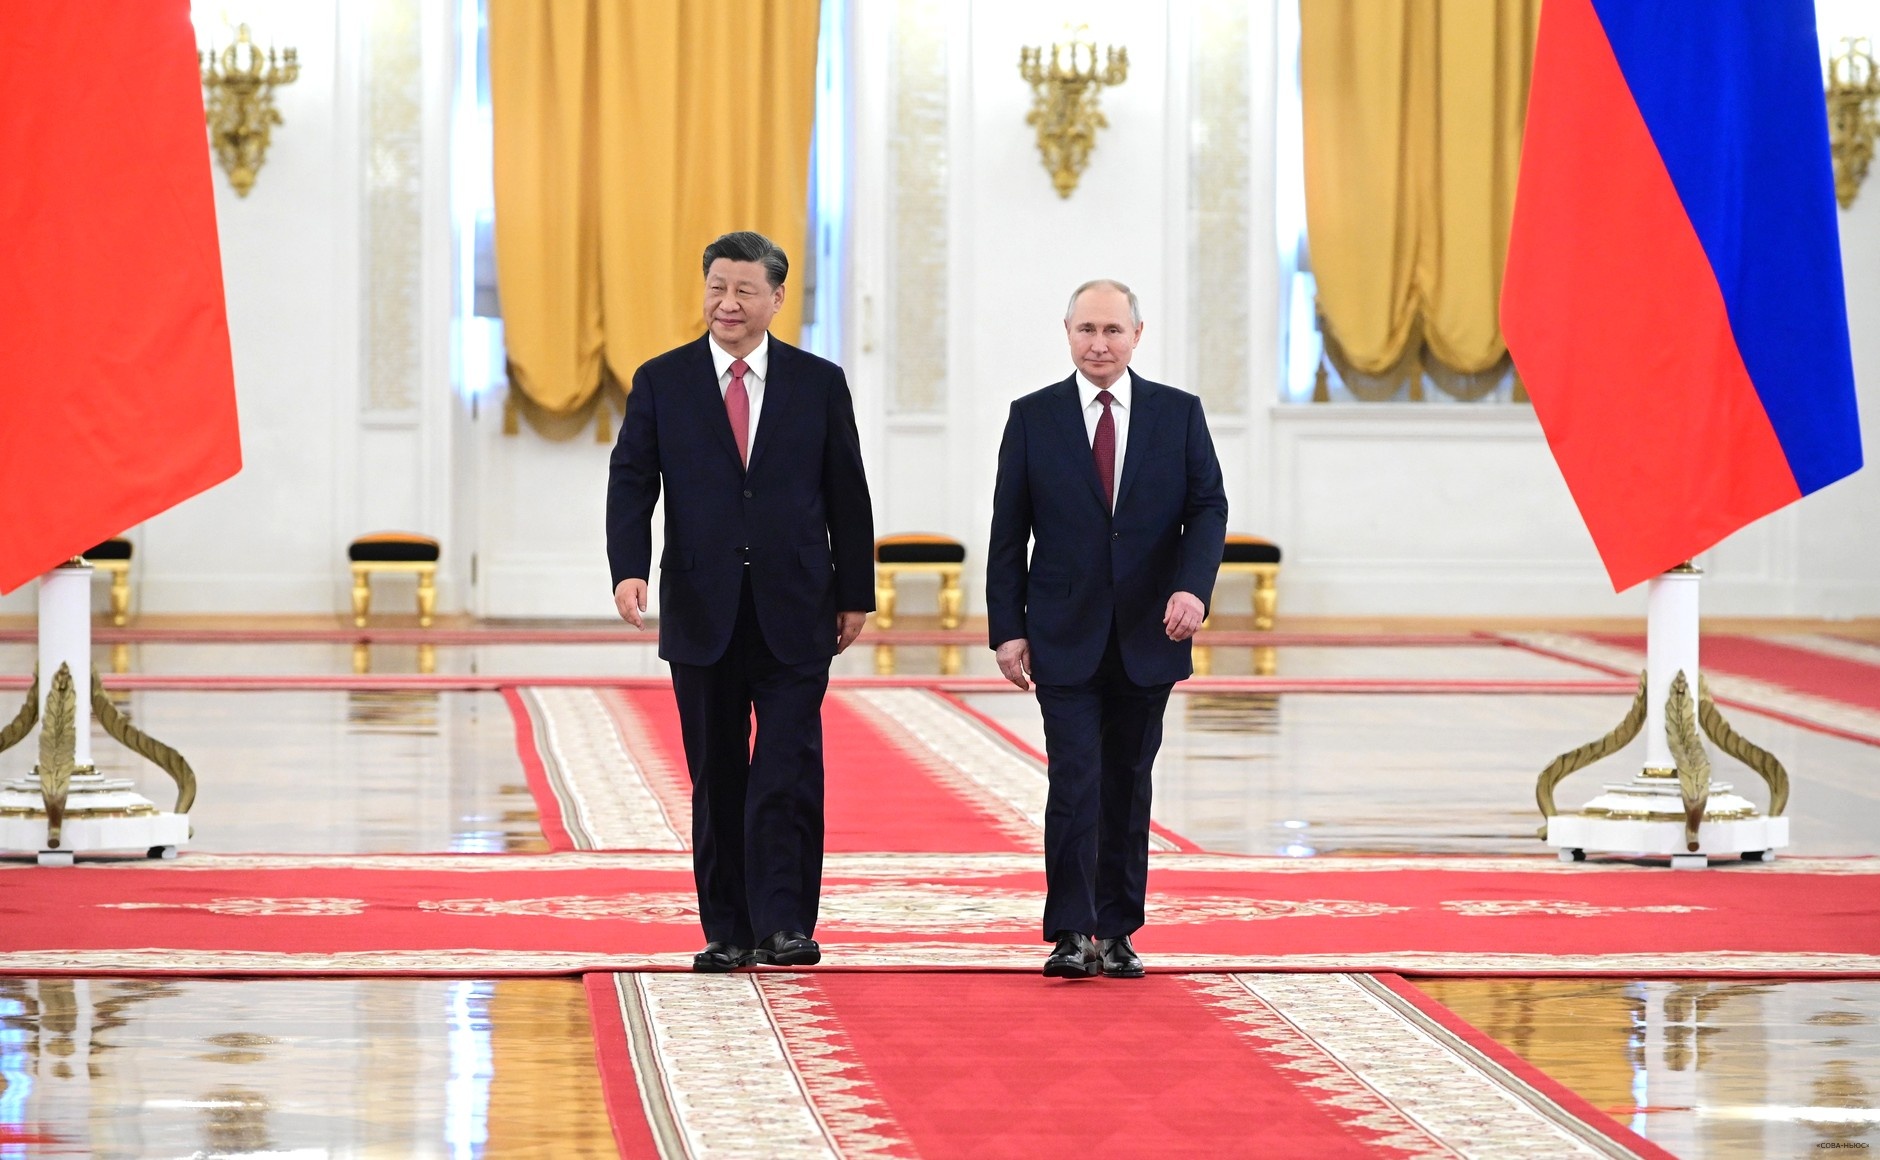 Началась пресс-конференция лидеров Китая и России по итогам переговоров